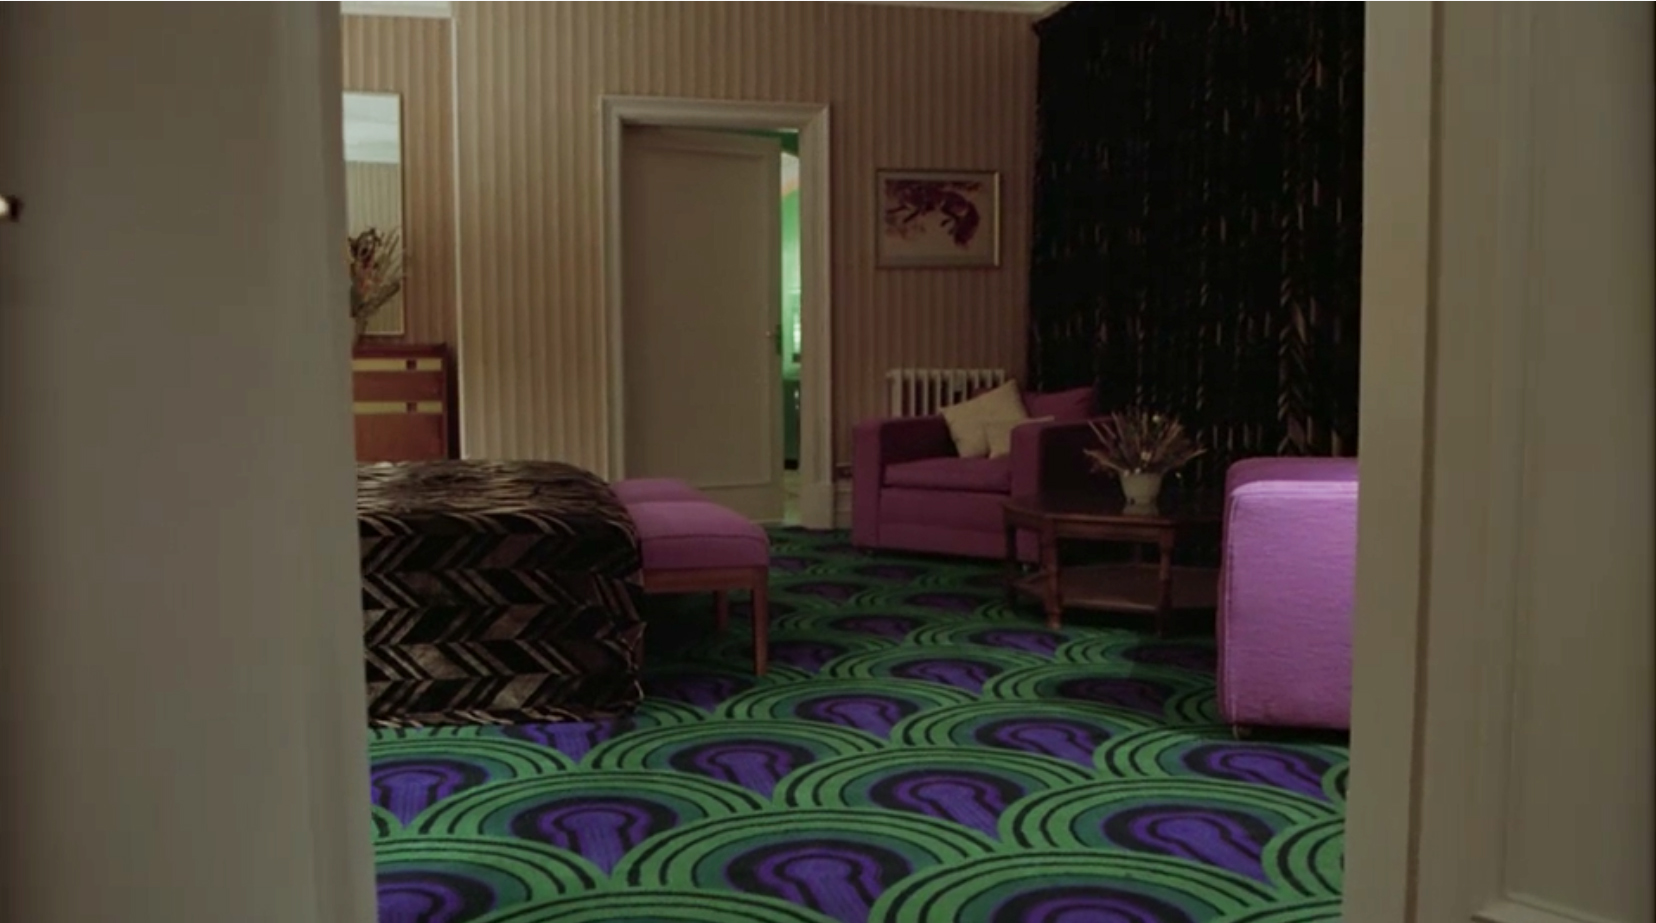 Overlook Hotel's Room 237 carpet